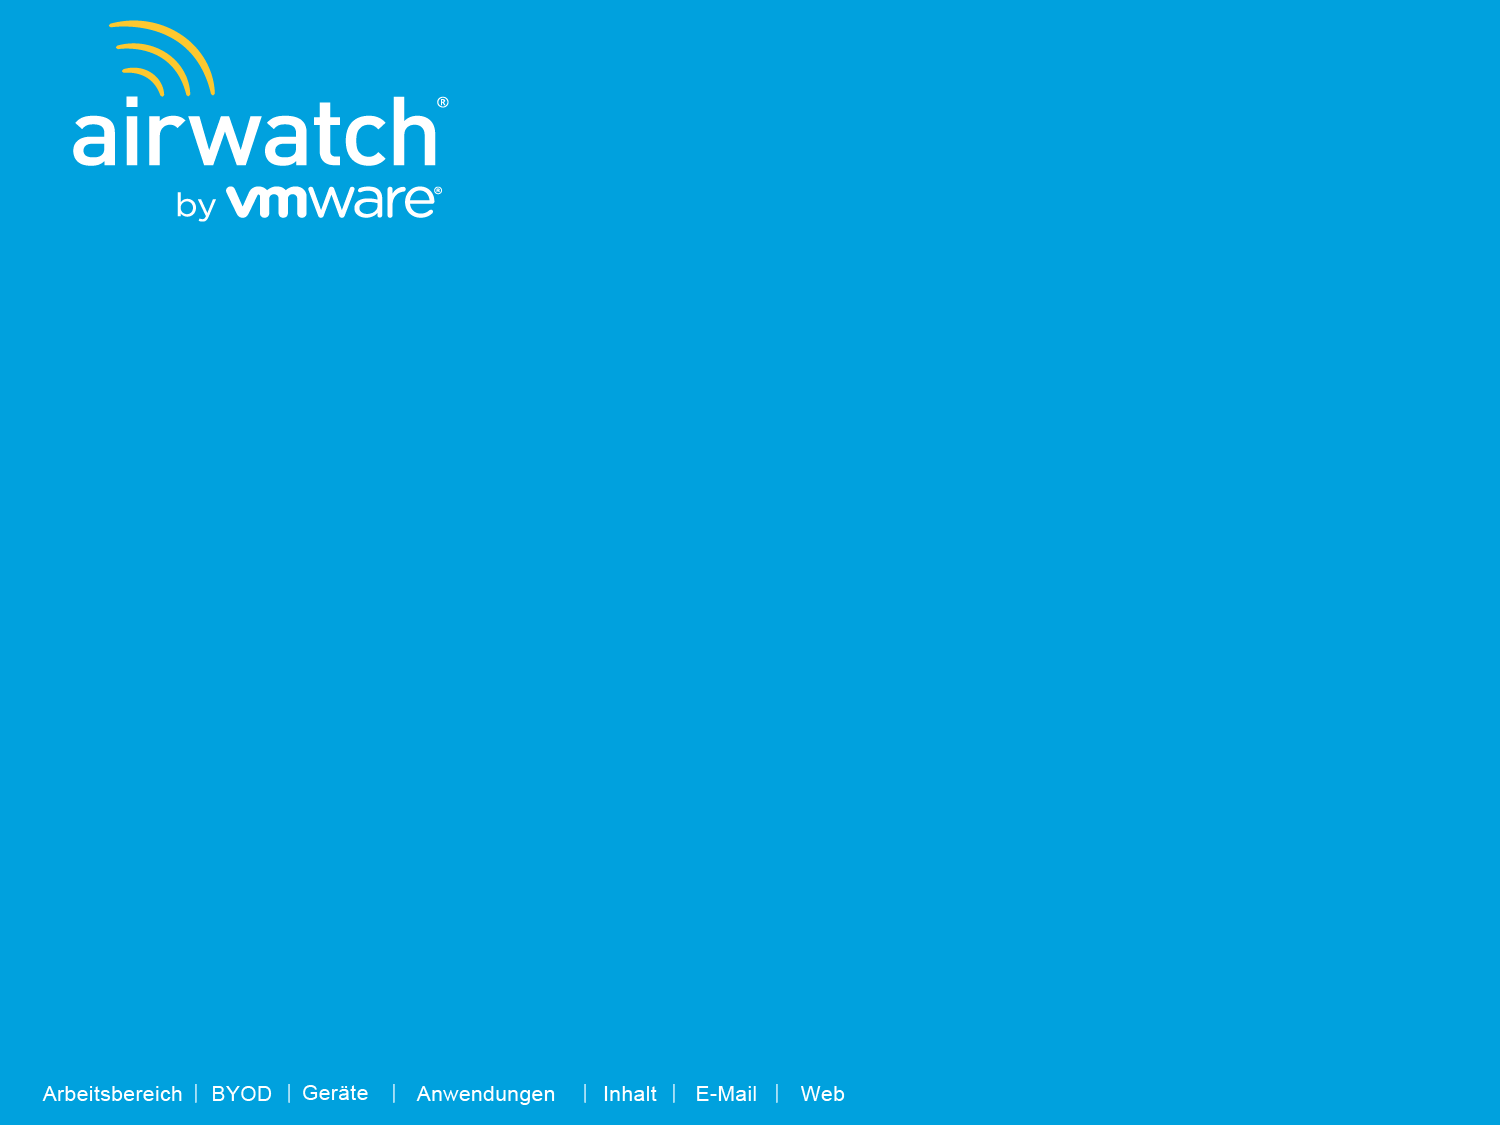 Das neue AirWatch by VMware: